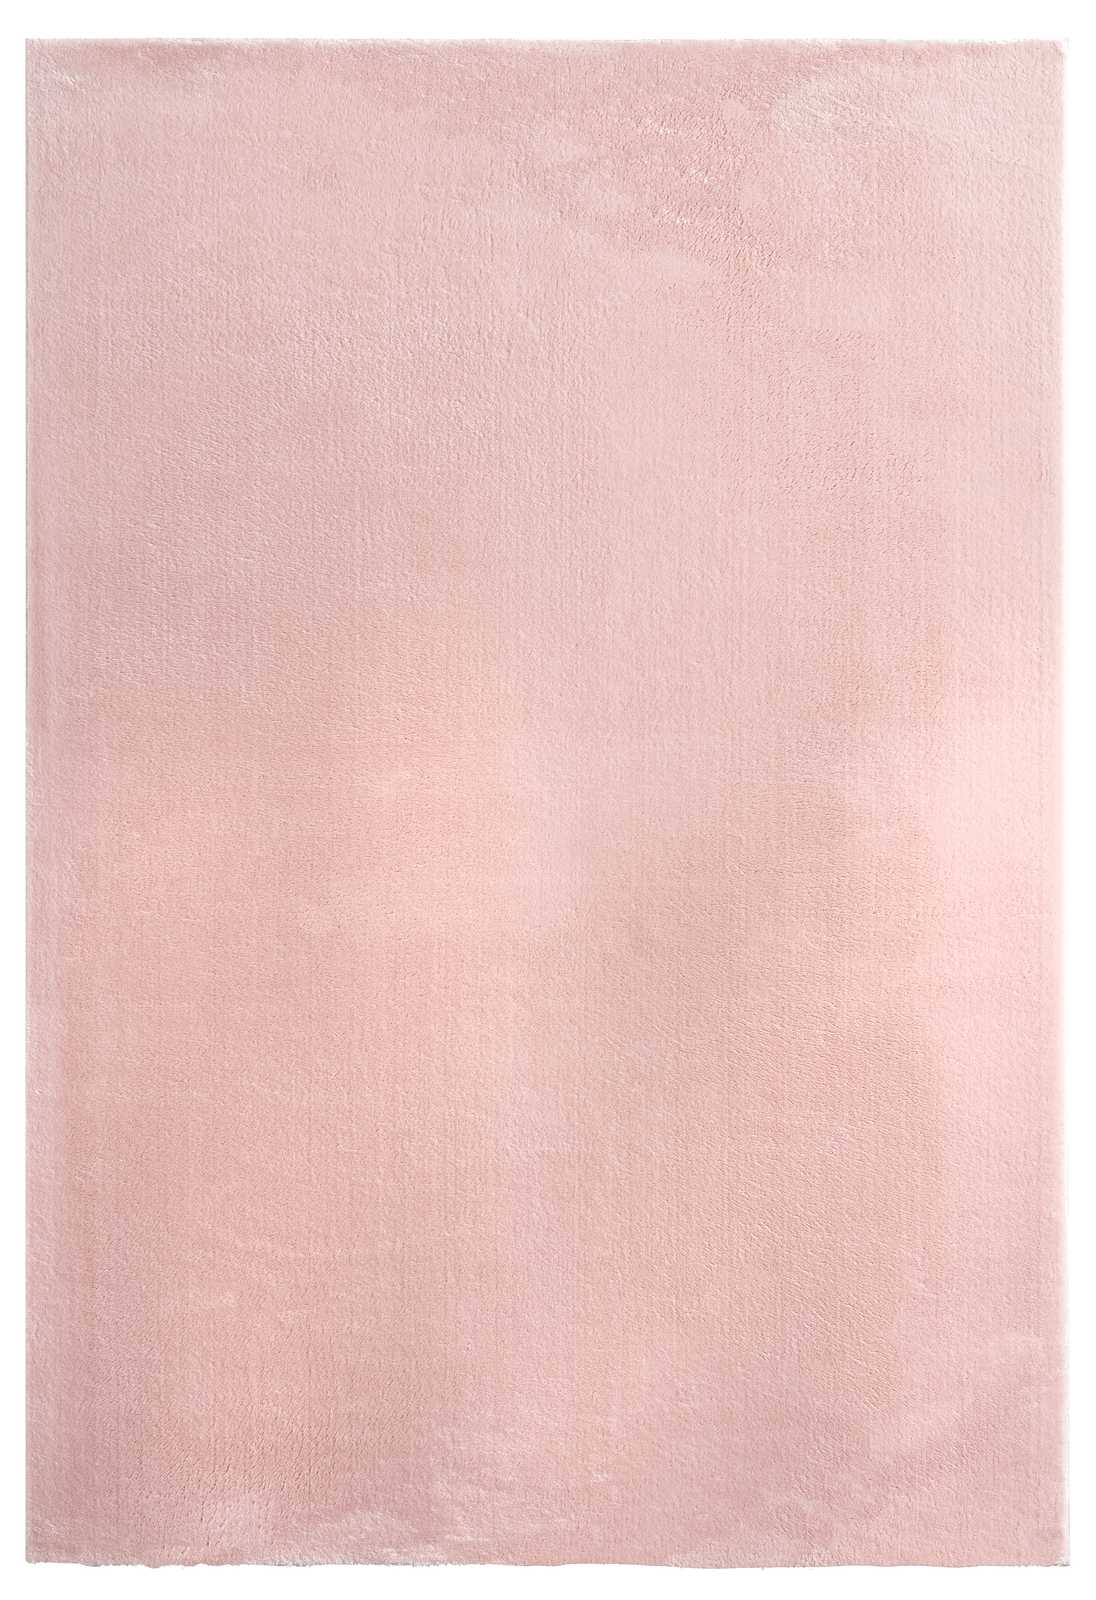             Runder Zarter Hochflor Teppich in Rosa – Ø 120 cm
        